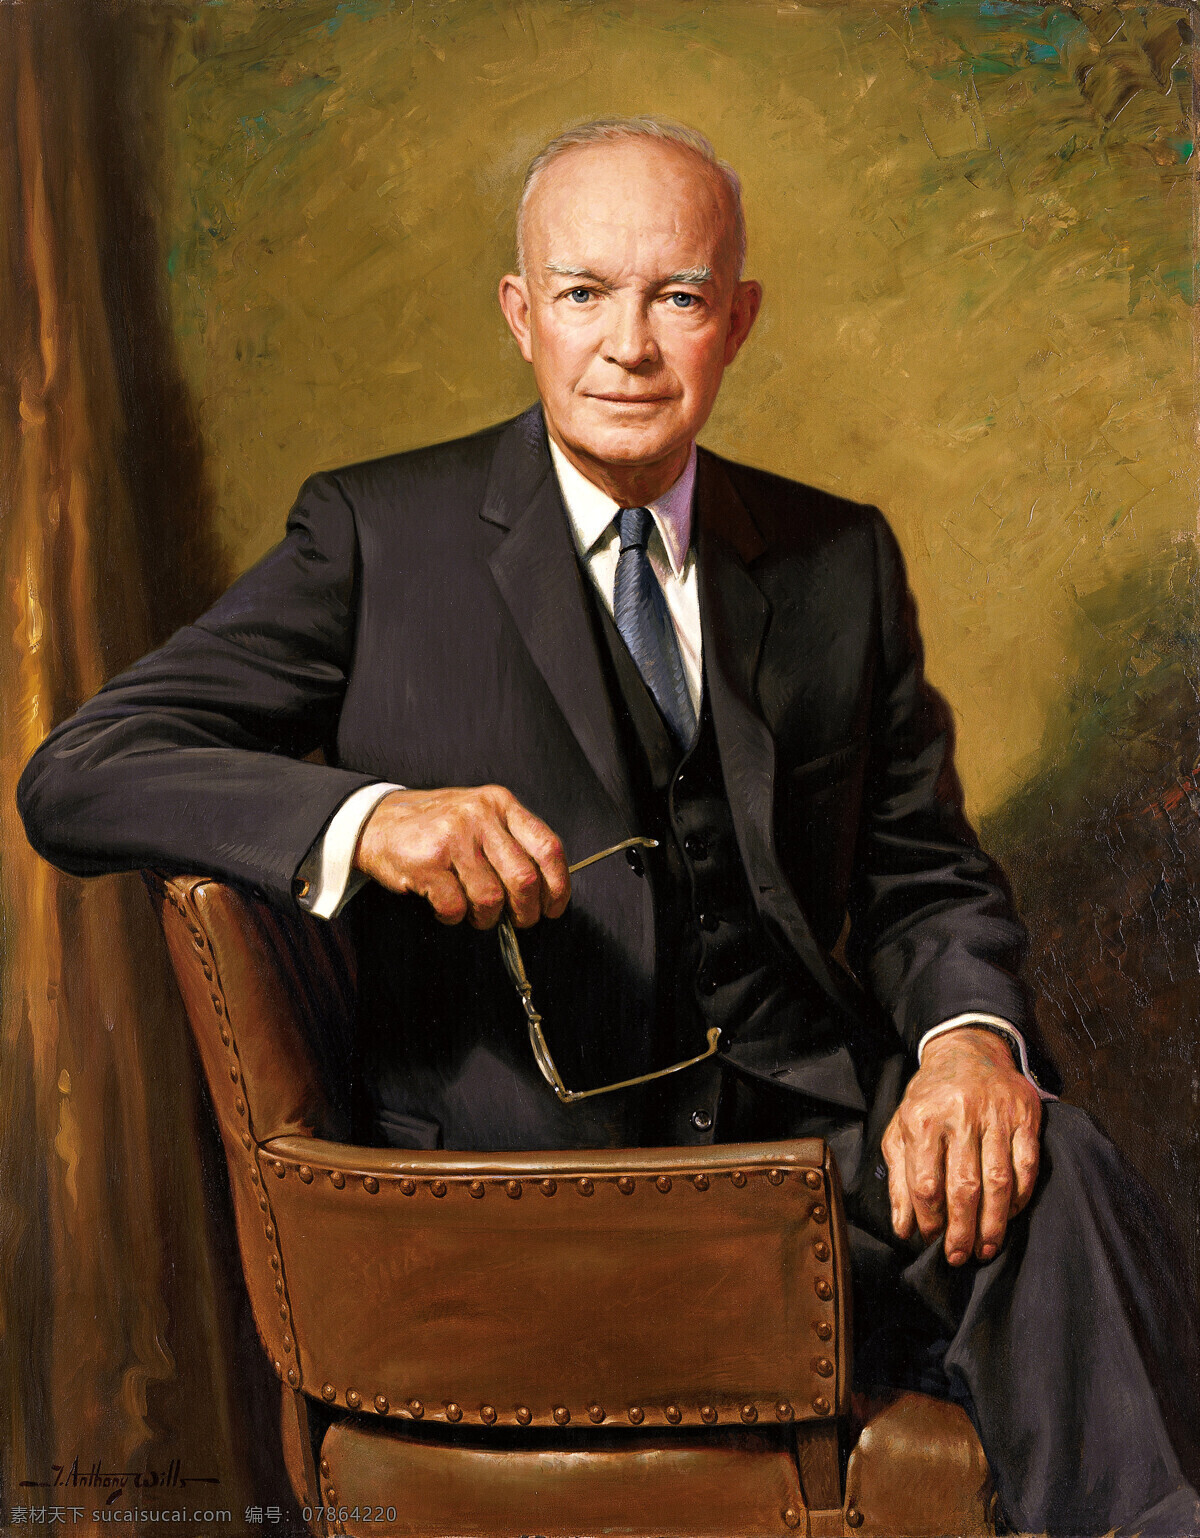 艾森豪威尔 美国总统 肖像画 名将 军事家 二战名人 文化艺术 绘画书法